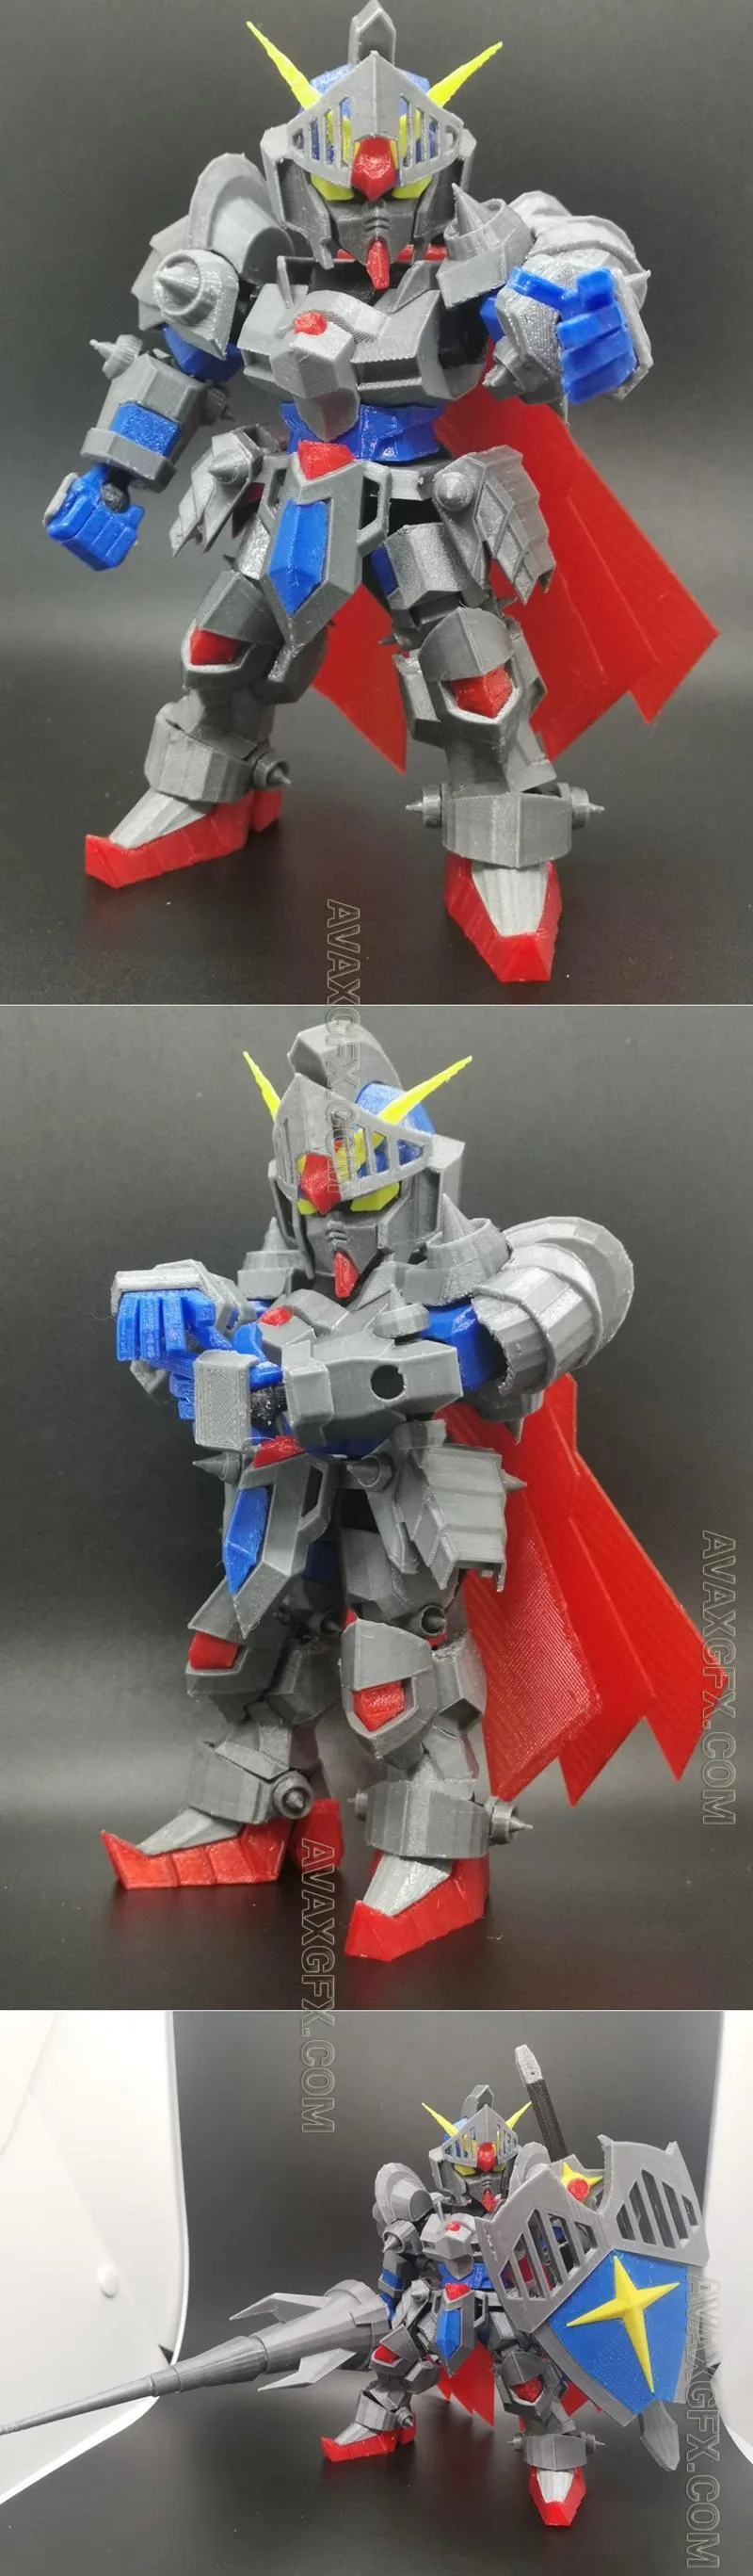 SD Knight Gundam - STL 3D Model